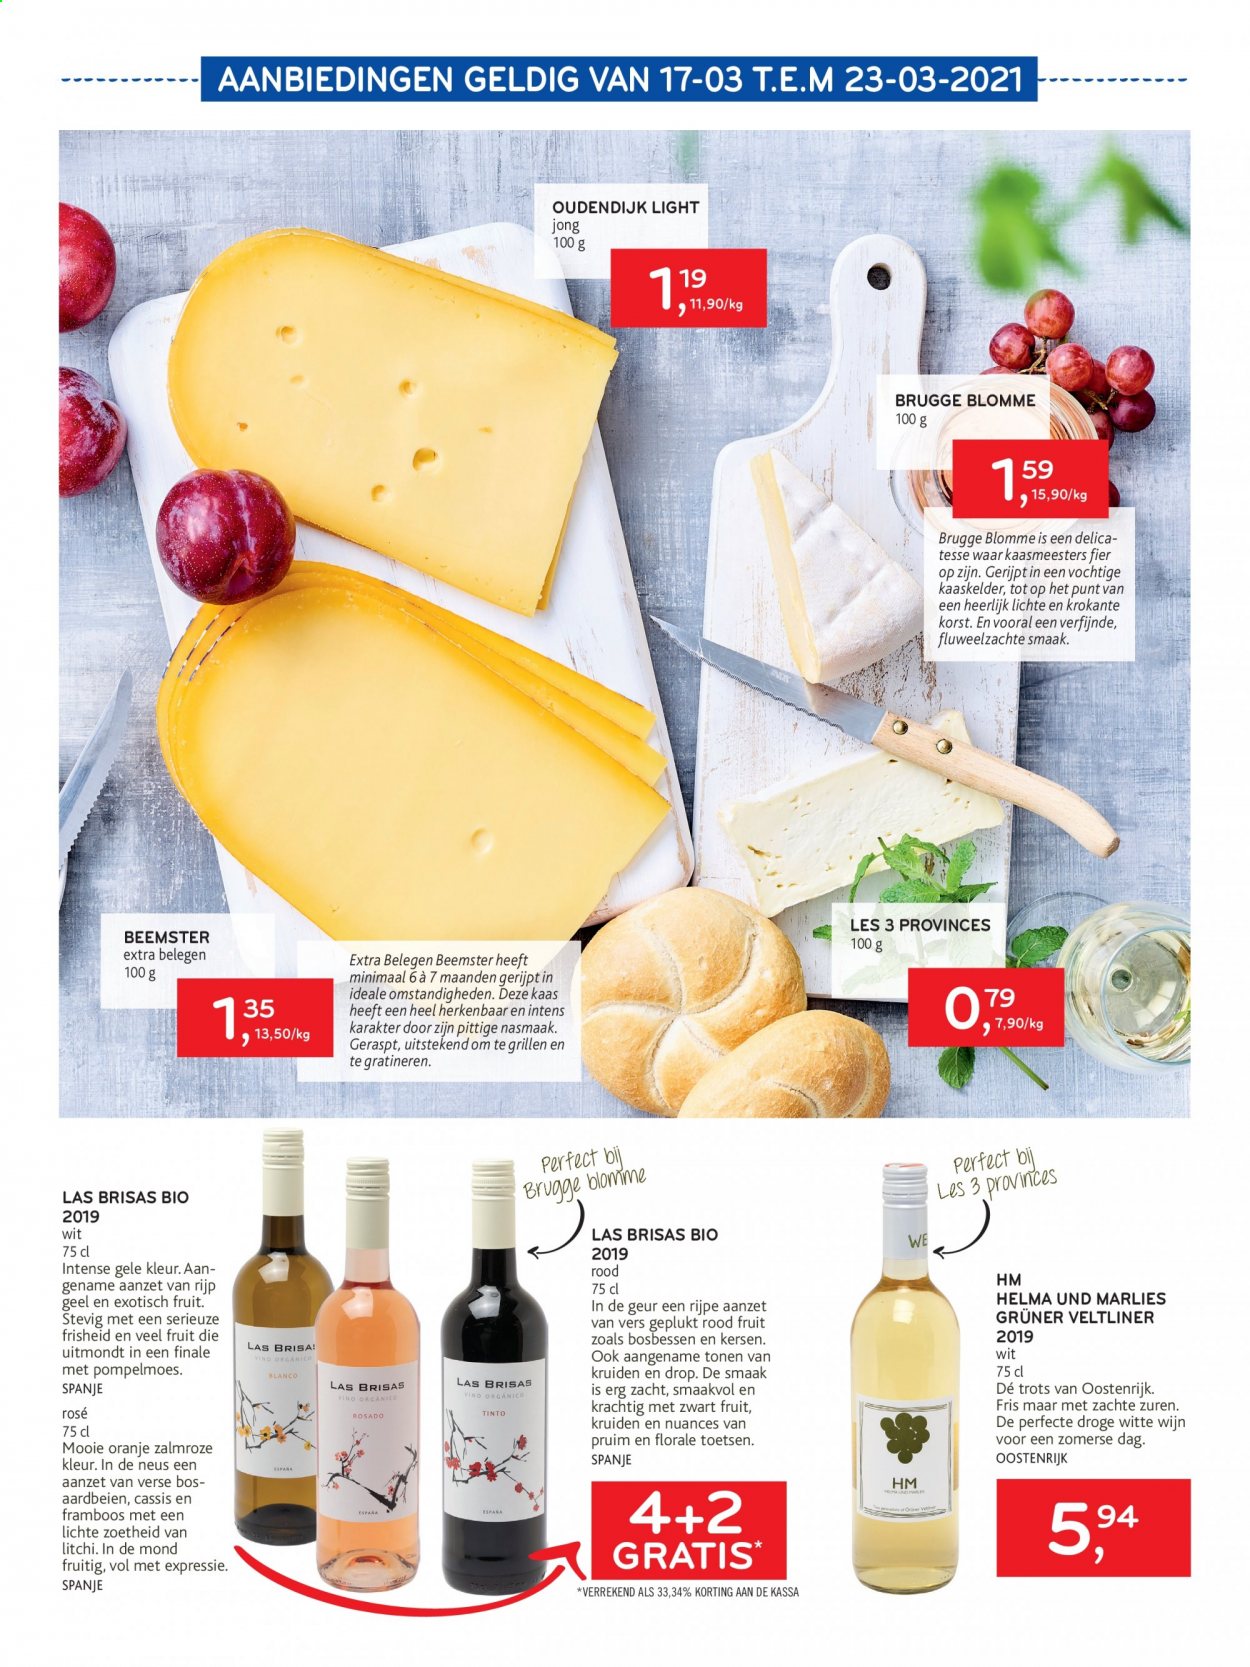 thumbnail - Alvo-aanbieding - 10/03/2021 - 23/03/2021 -  producten in de aanbieding - kaas, kersen, oranje, witte wijn, wijn. Pagina 3.